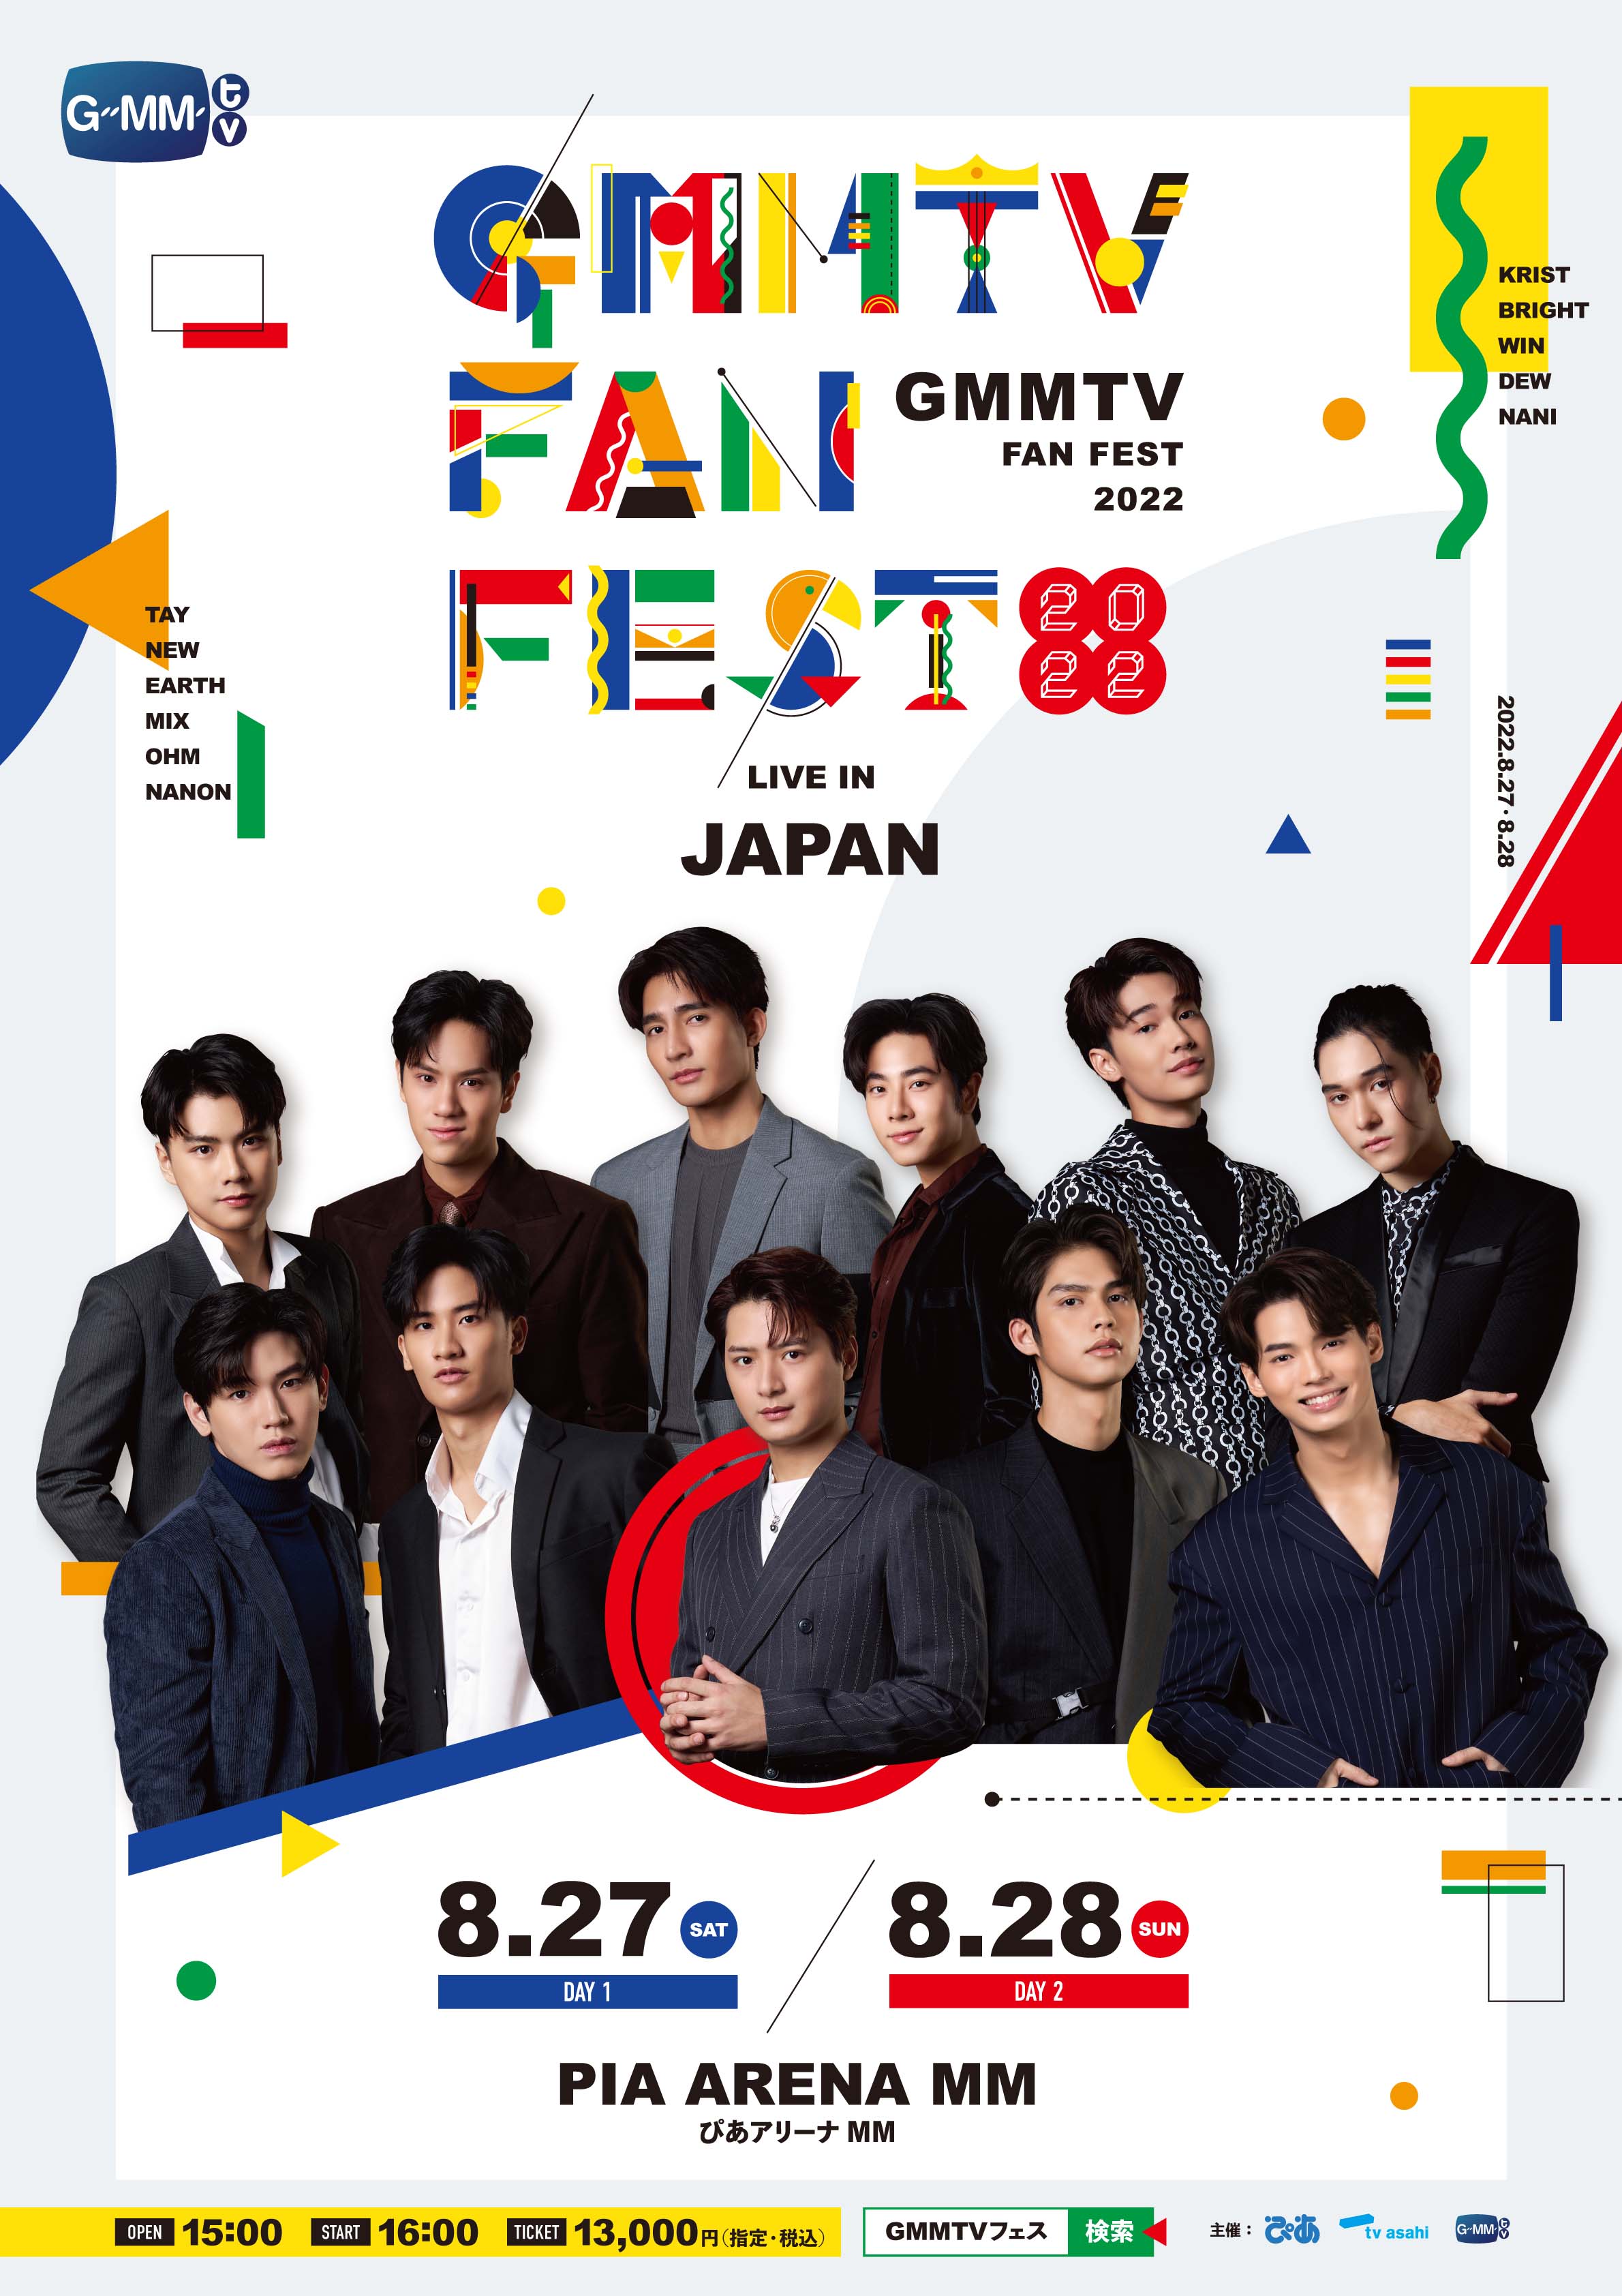 GMMTV Fan Fest 2022 Live in JAPAN セット